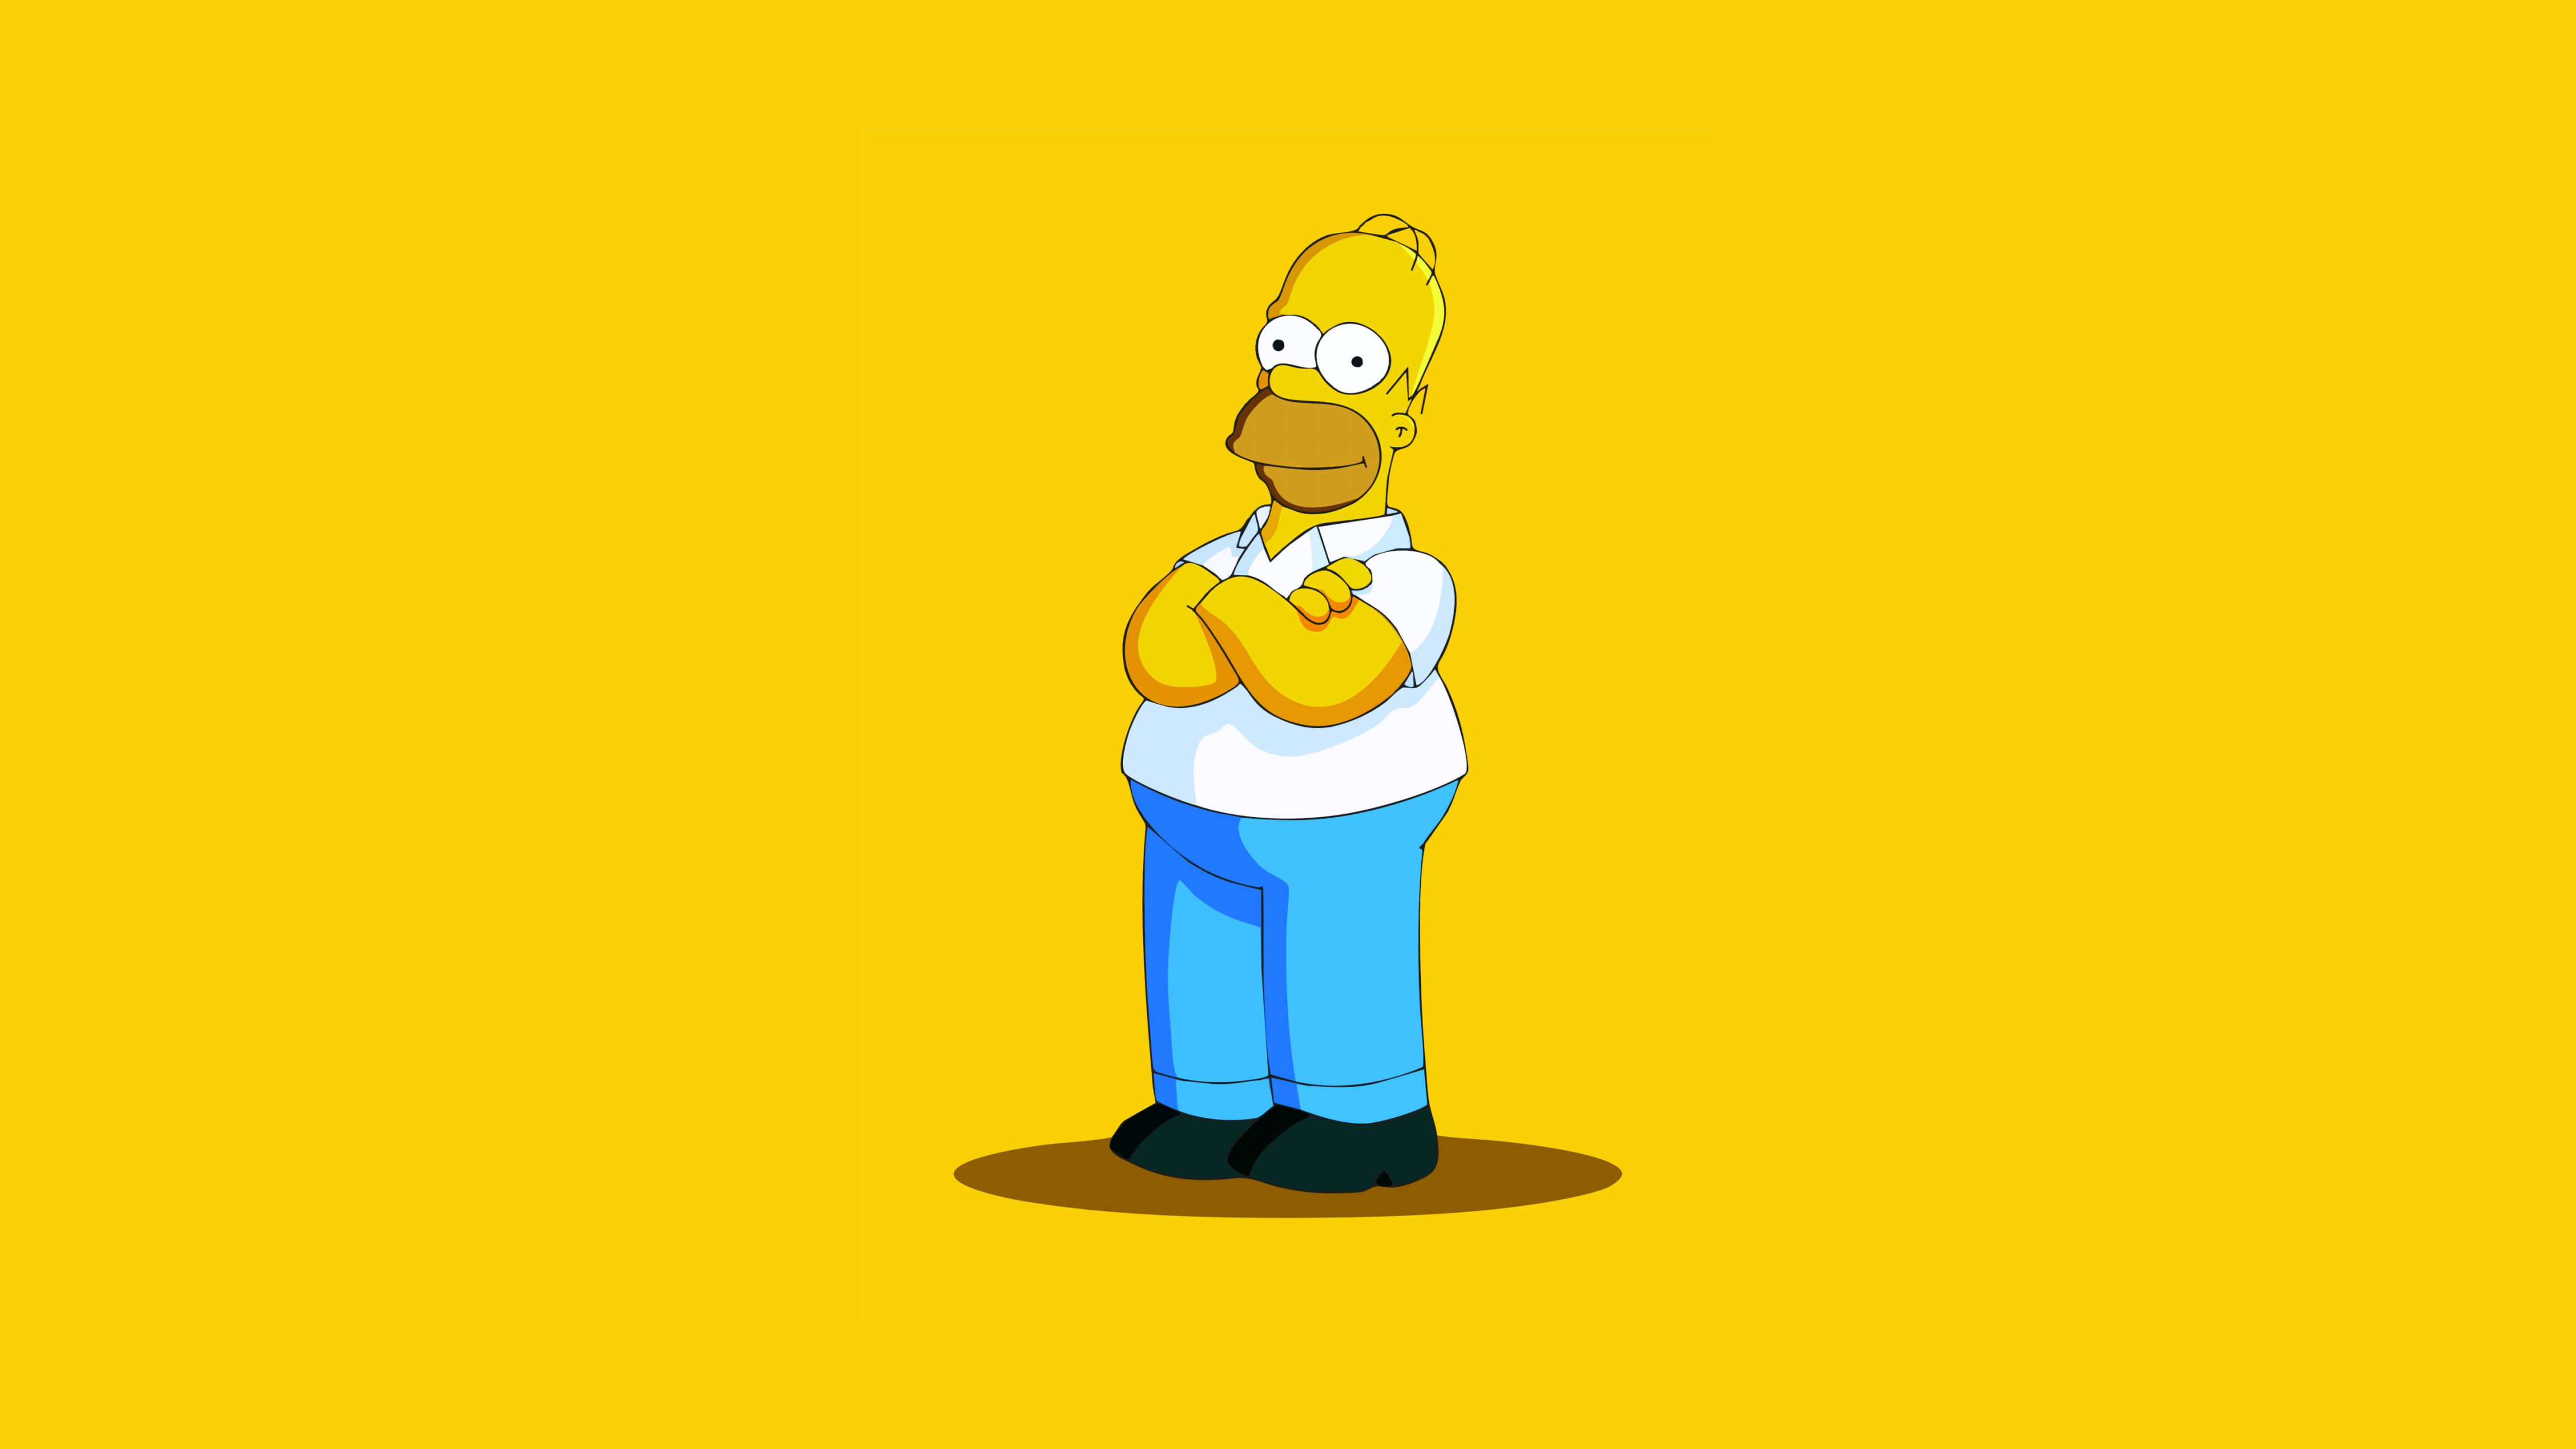 Homer Simpson wallpaper for desktop and mobiles - Homer Simpson